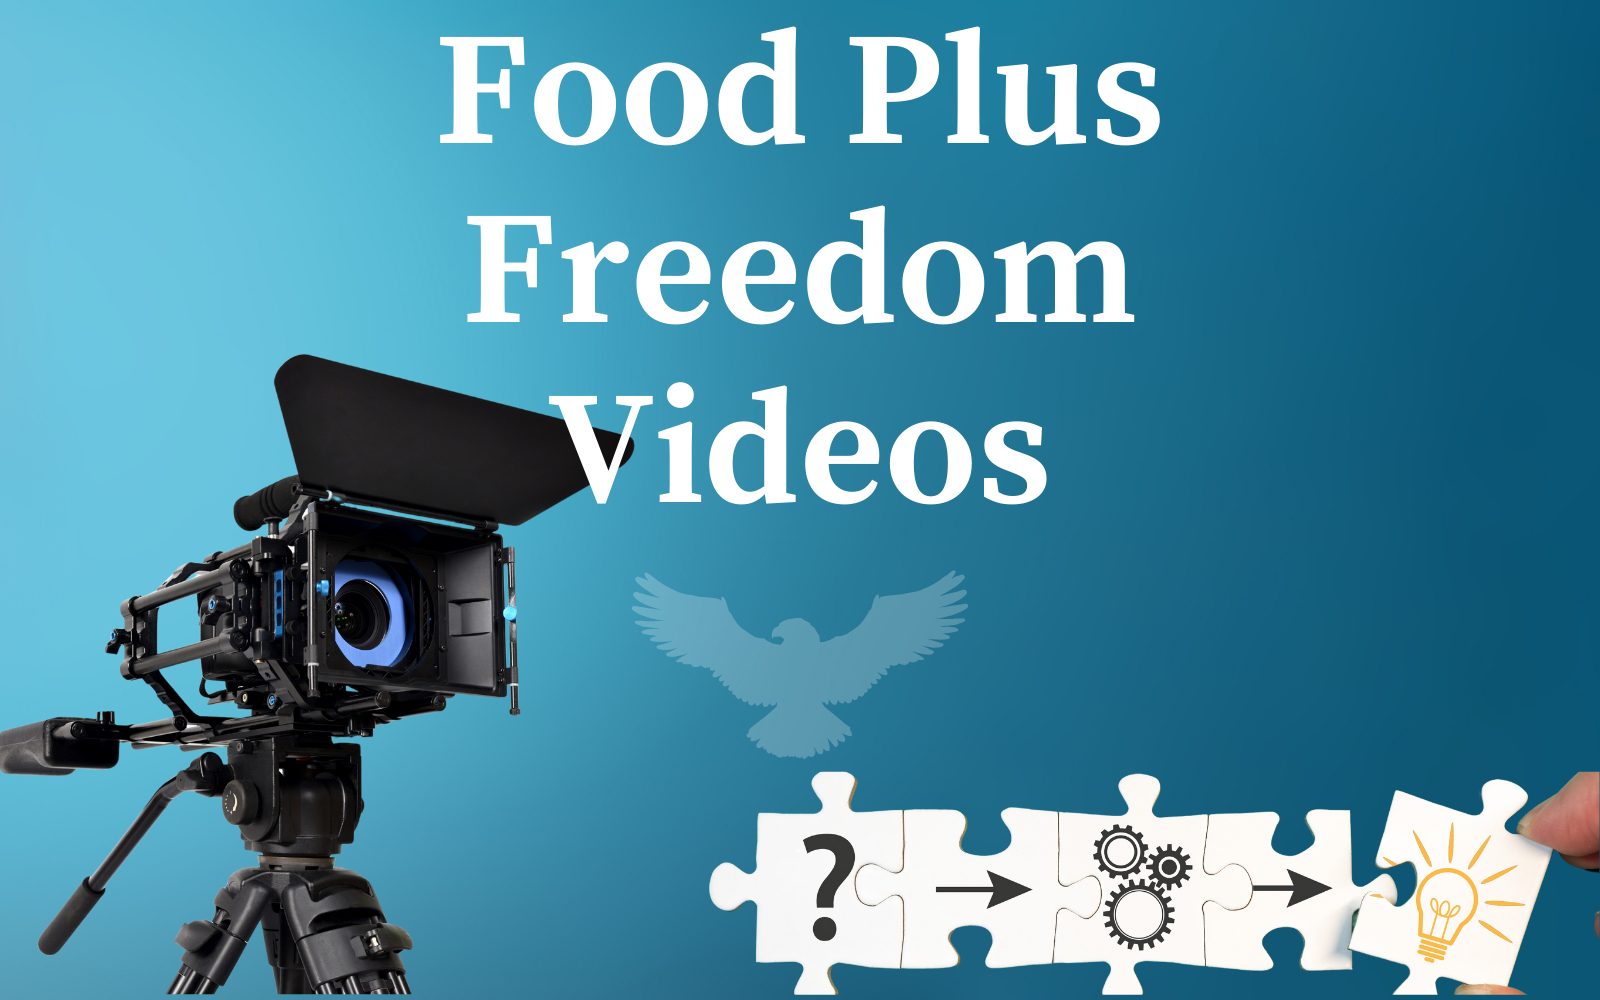 Food Plus Freedom Video